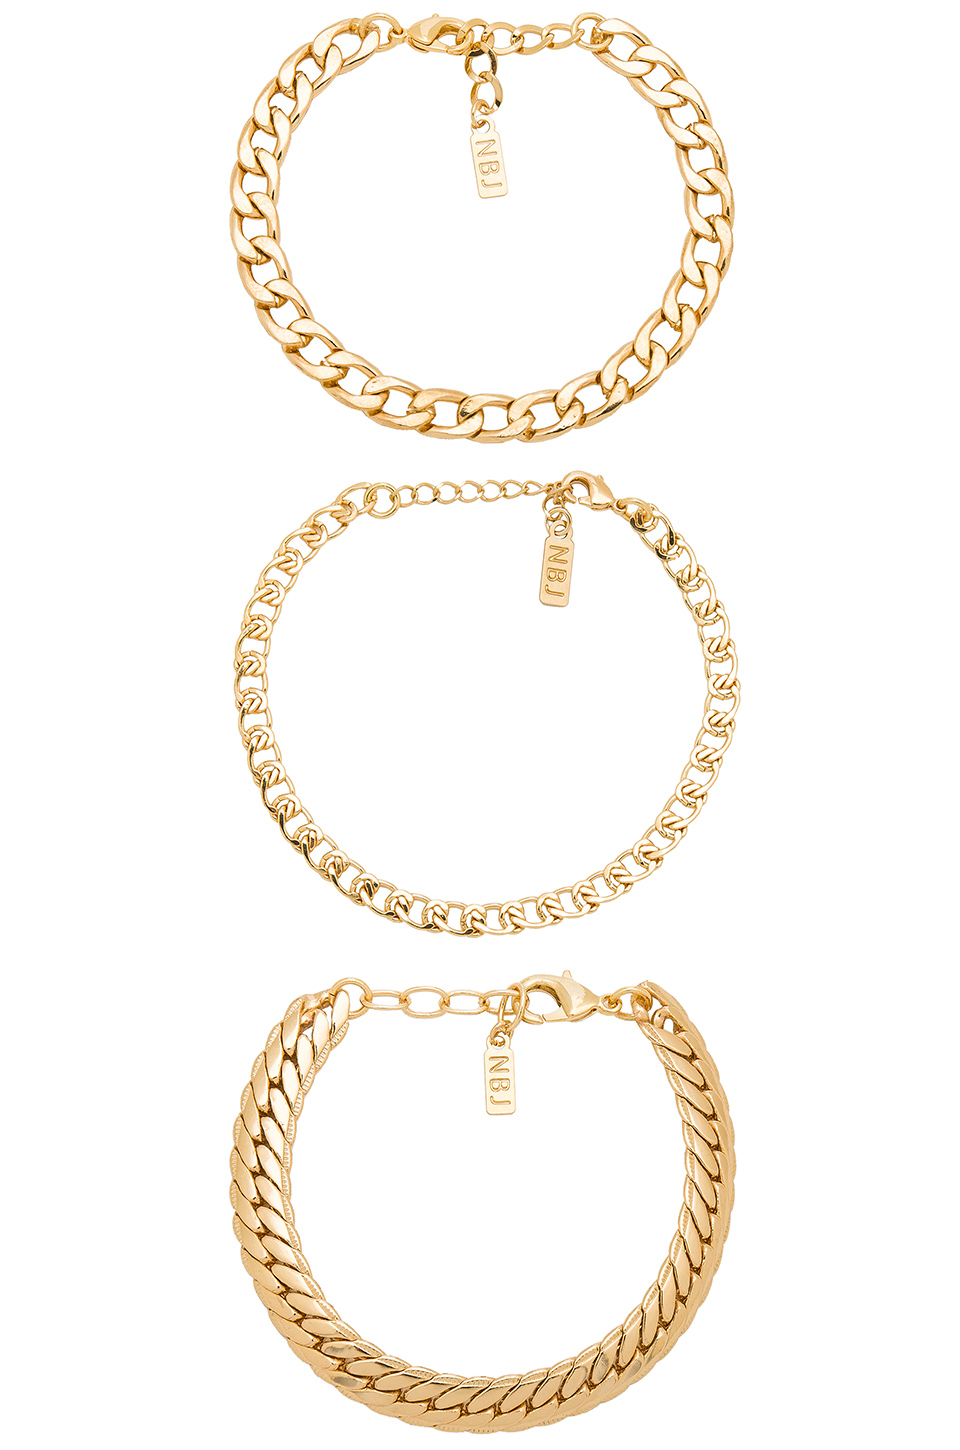 Gold bracelets from Revolve